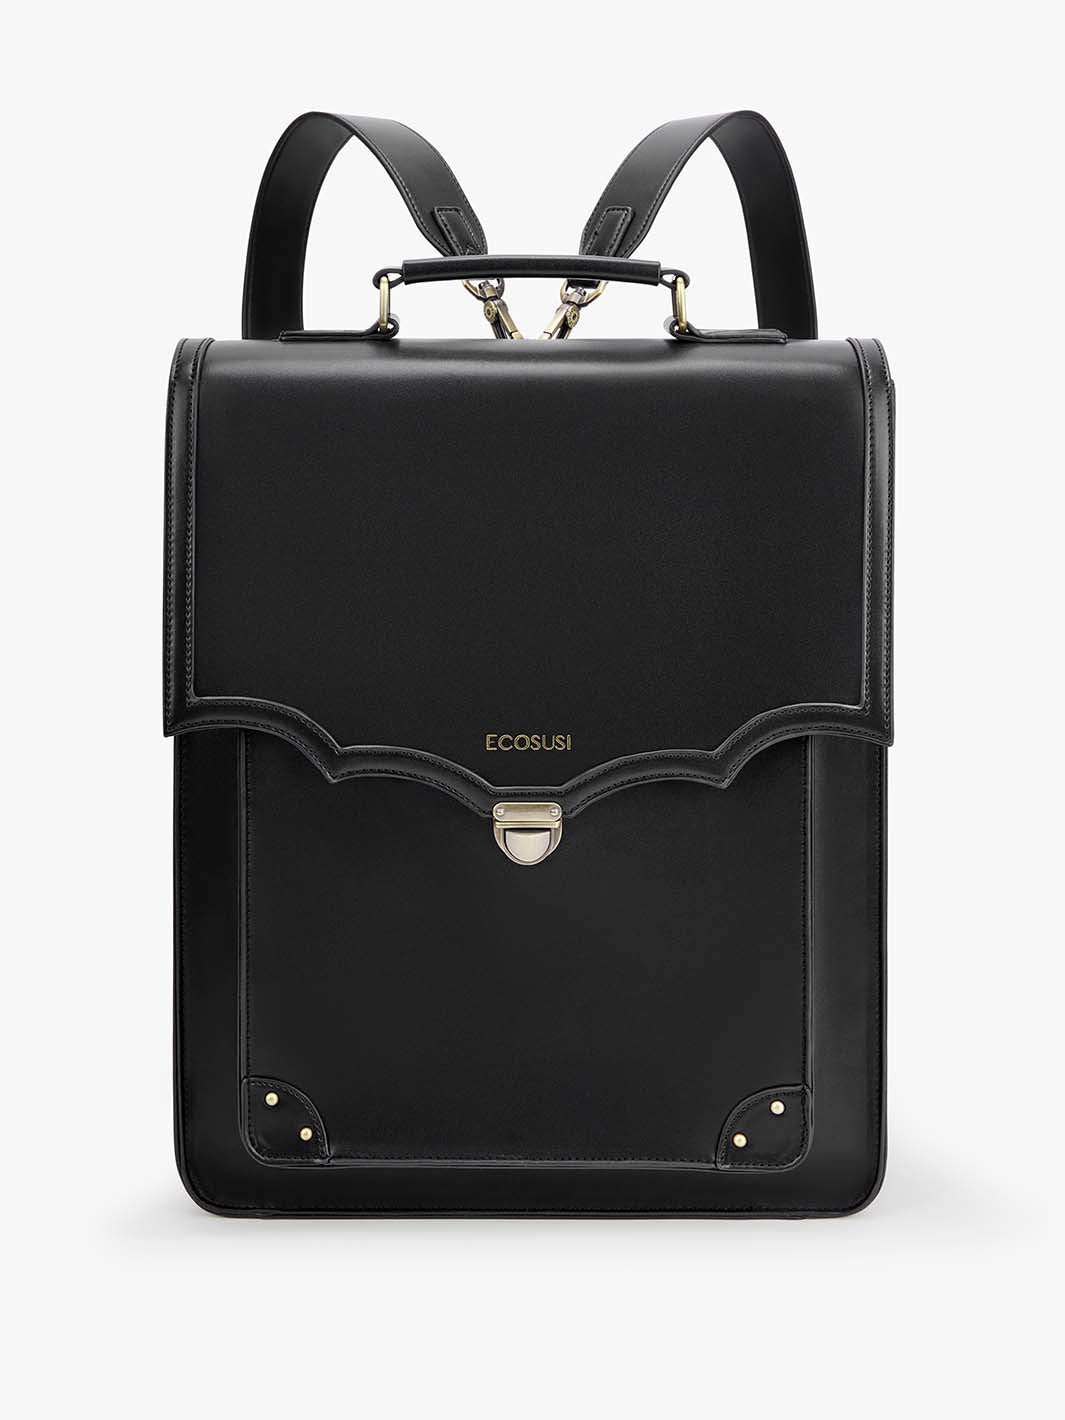 Ecosusi Aria Vintage Backpack,Stylish 15.6-inch Laptop Bag